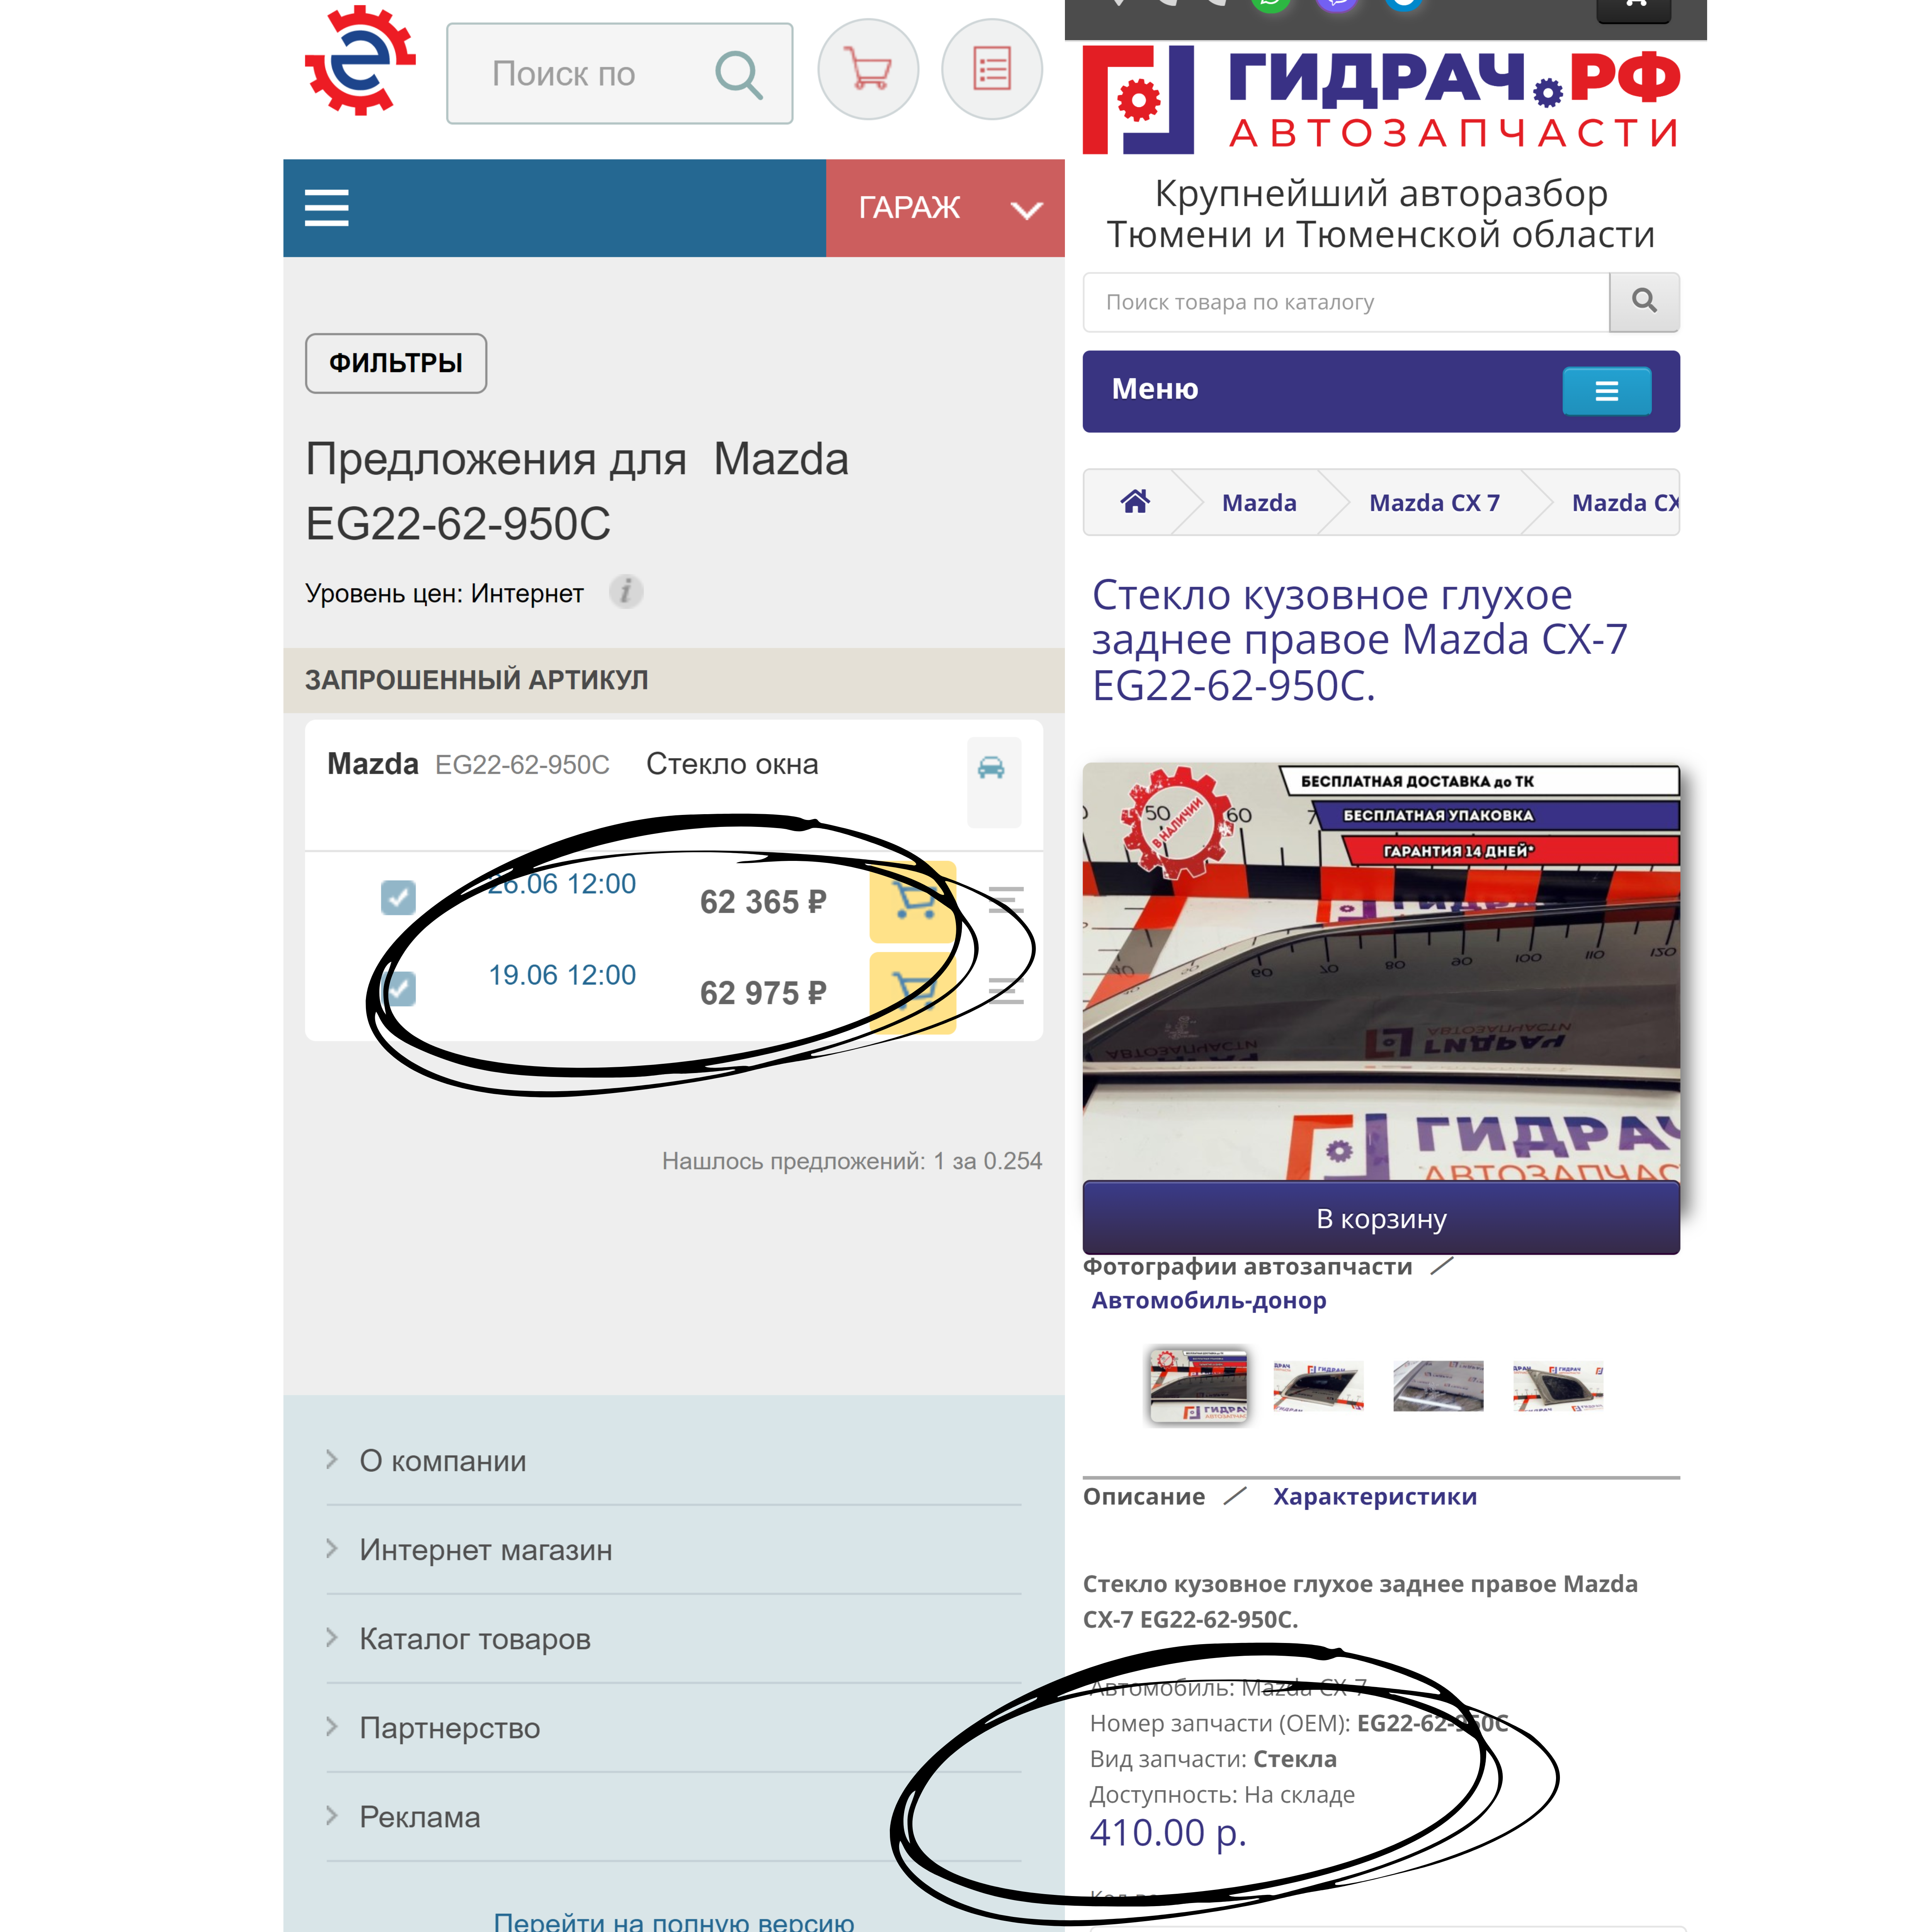 Бампер за 2 037 538 рублей. Что происходит на рынке автозапчастей